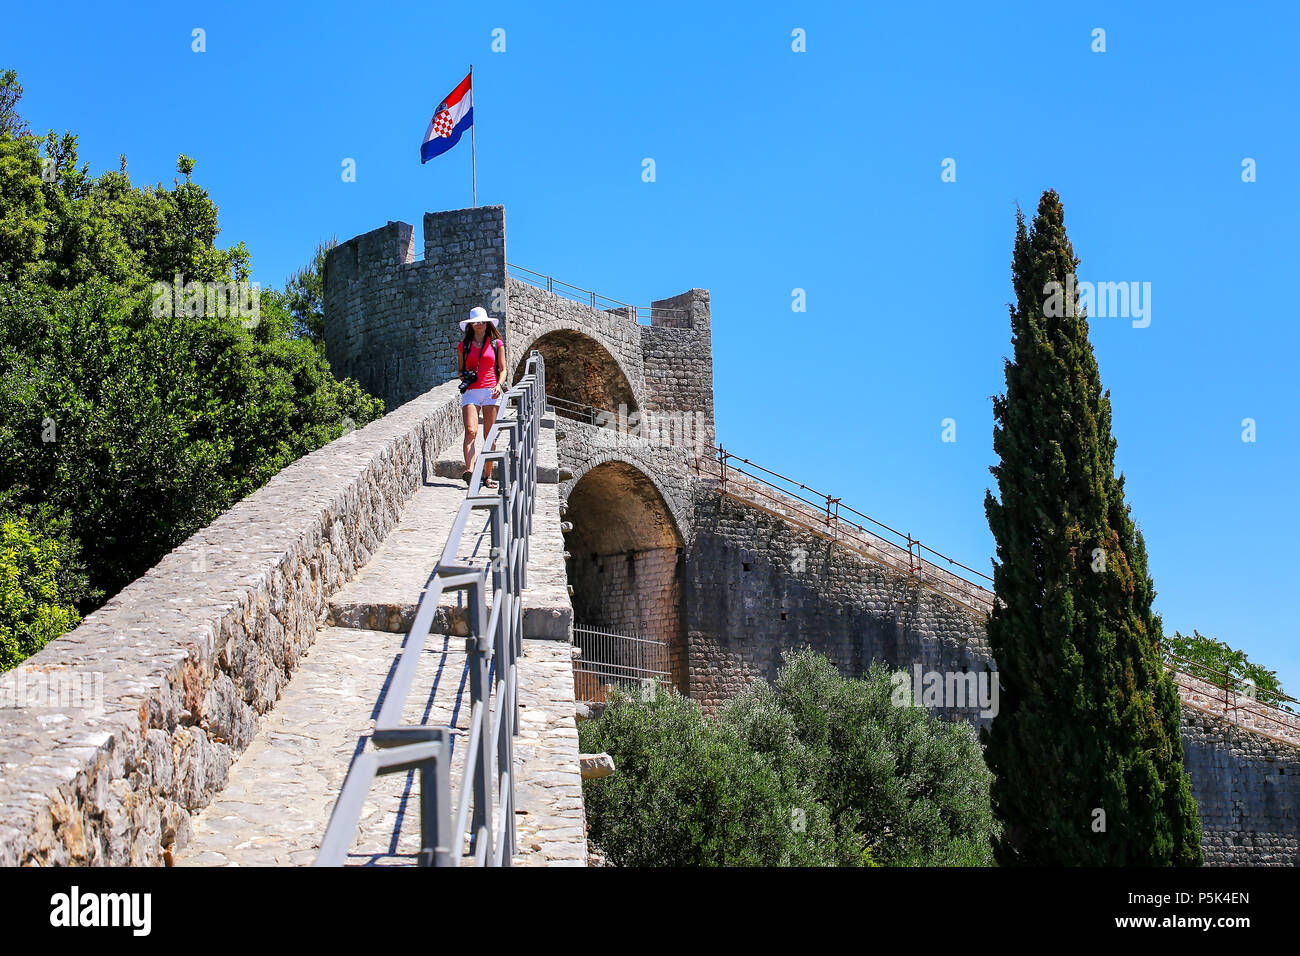 Jeune femme marche sur le mur de défense de la ville de Ston, péninsule de Peljesac, Croatie. Ston est un fort de la République de Raguse Banque D'Images